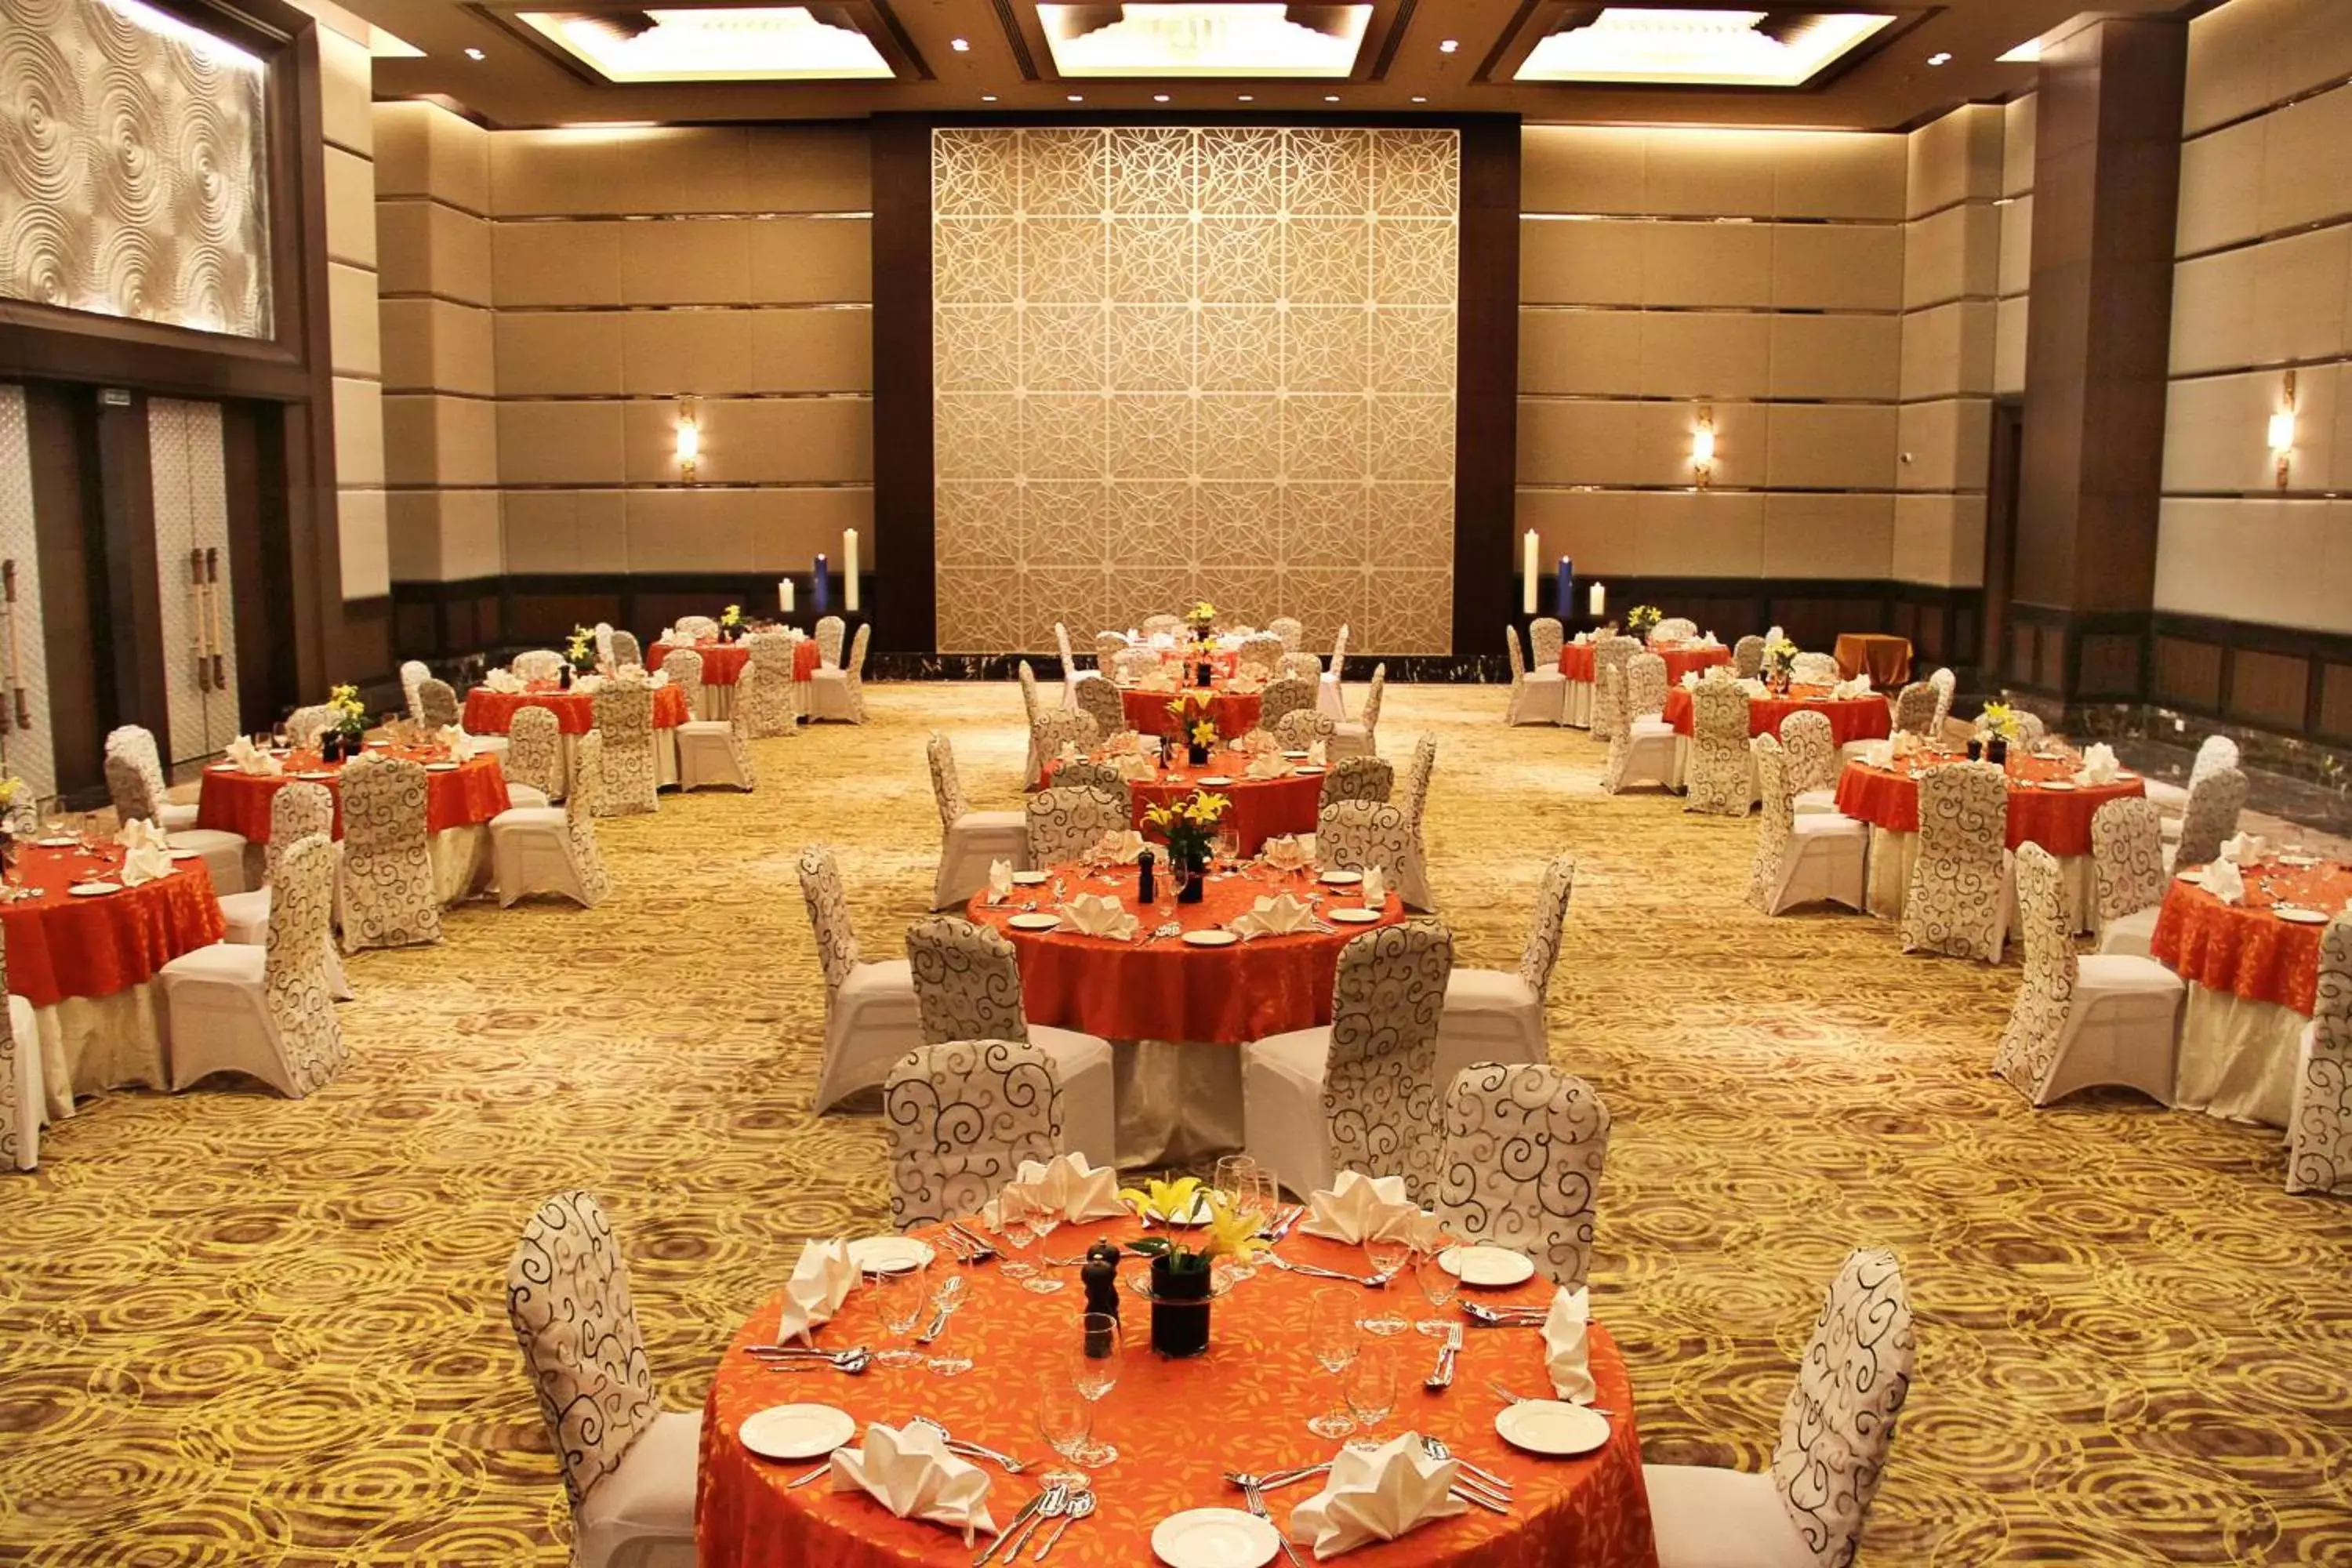 On site, Banquet Facilities in Radisson Blu Plaza Hotel Mysore